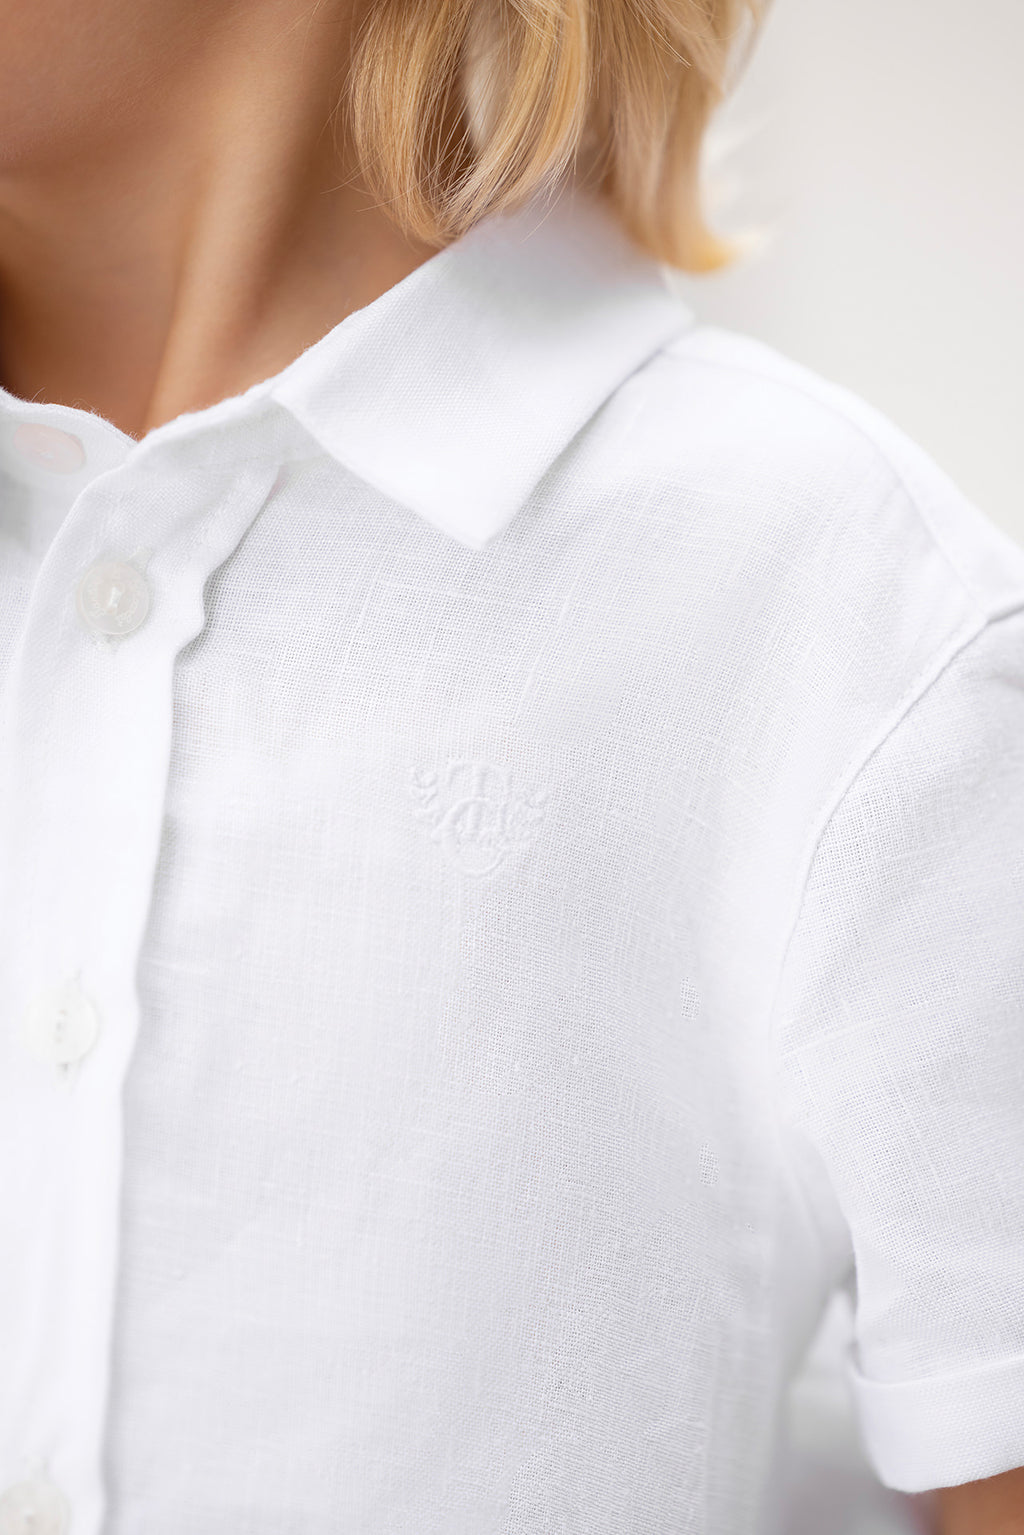 Camisa - Lino Blanco mangas cortas